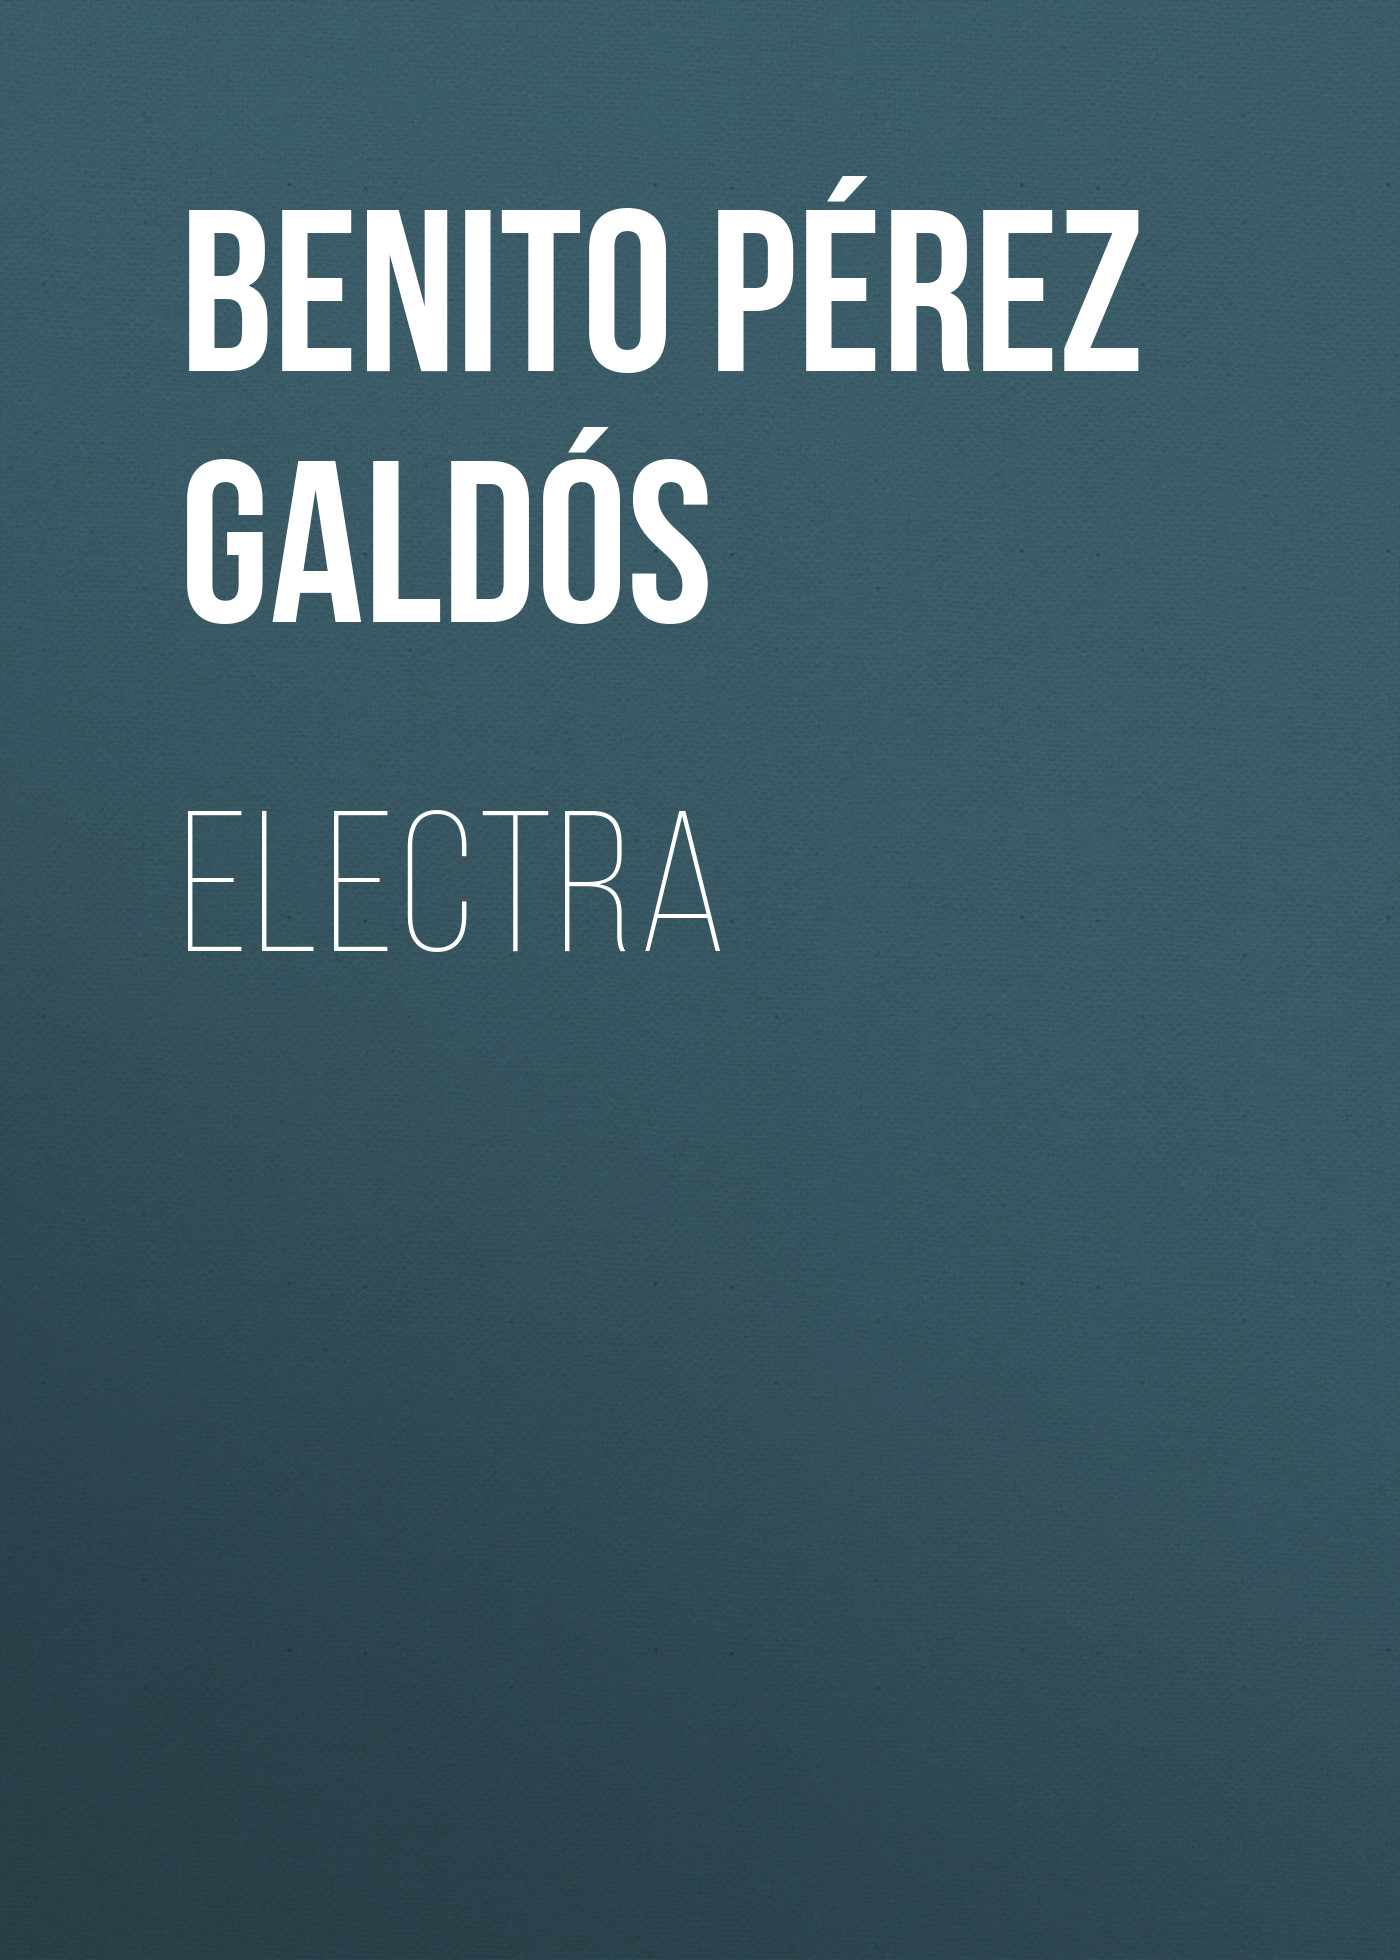 Книга Electra из серии , созданная Benito Pérez Galdós, может относится к жанру Зарубежная старинная литература, Зарубежная классика, Зарубежные любовные романы. Стоимость электронной книги Electra с идентификатором 36095901 составляет 0 руб.